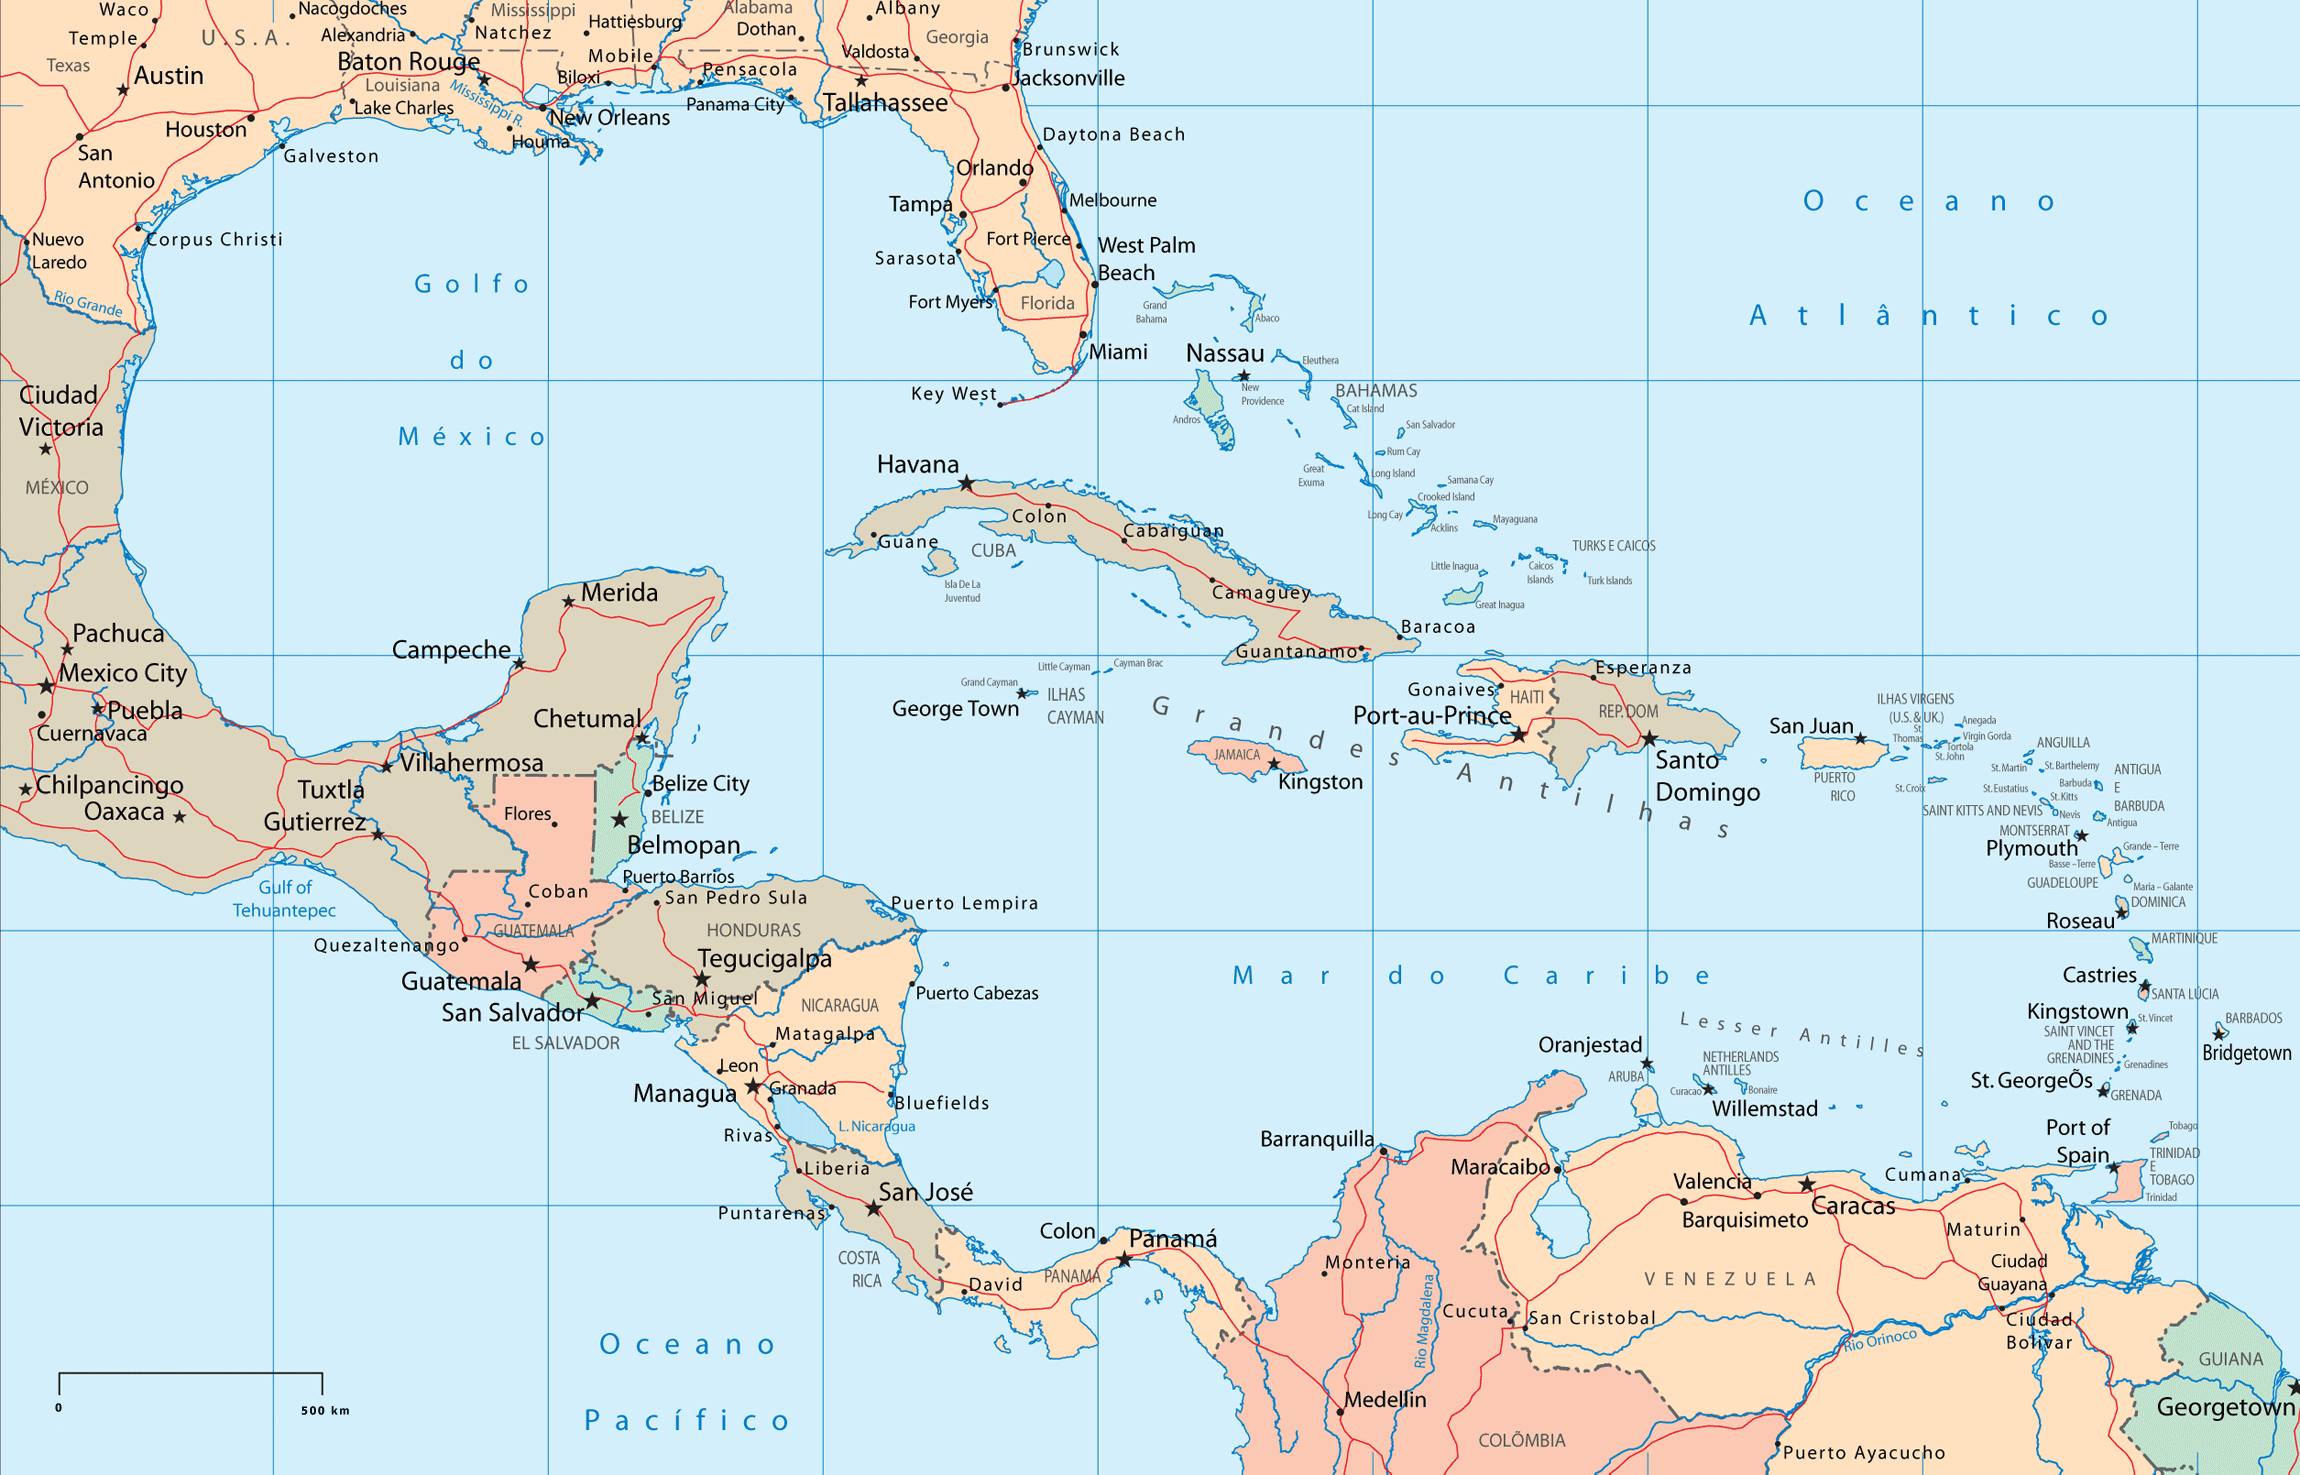 Mapa Político de América Central y del Caribe - Tamaño completo